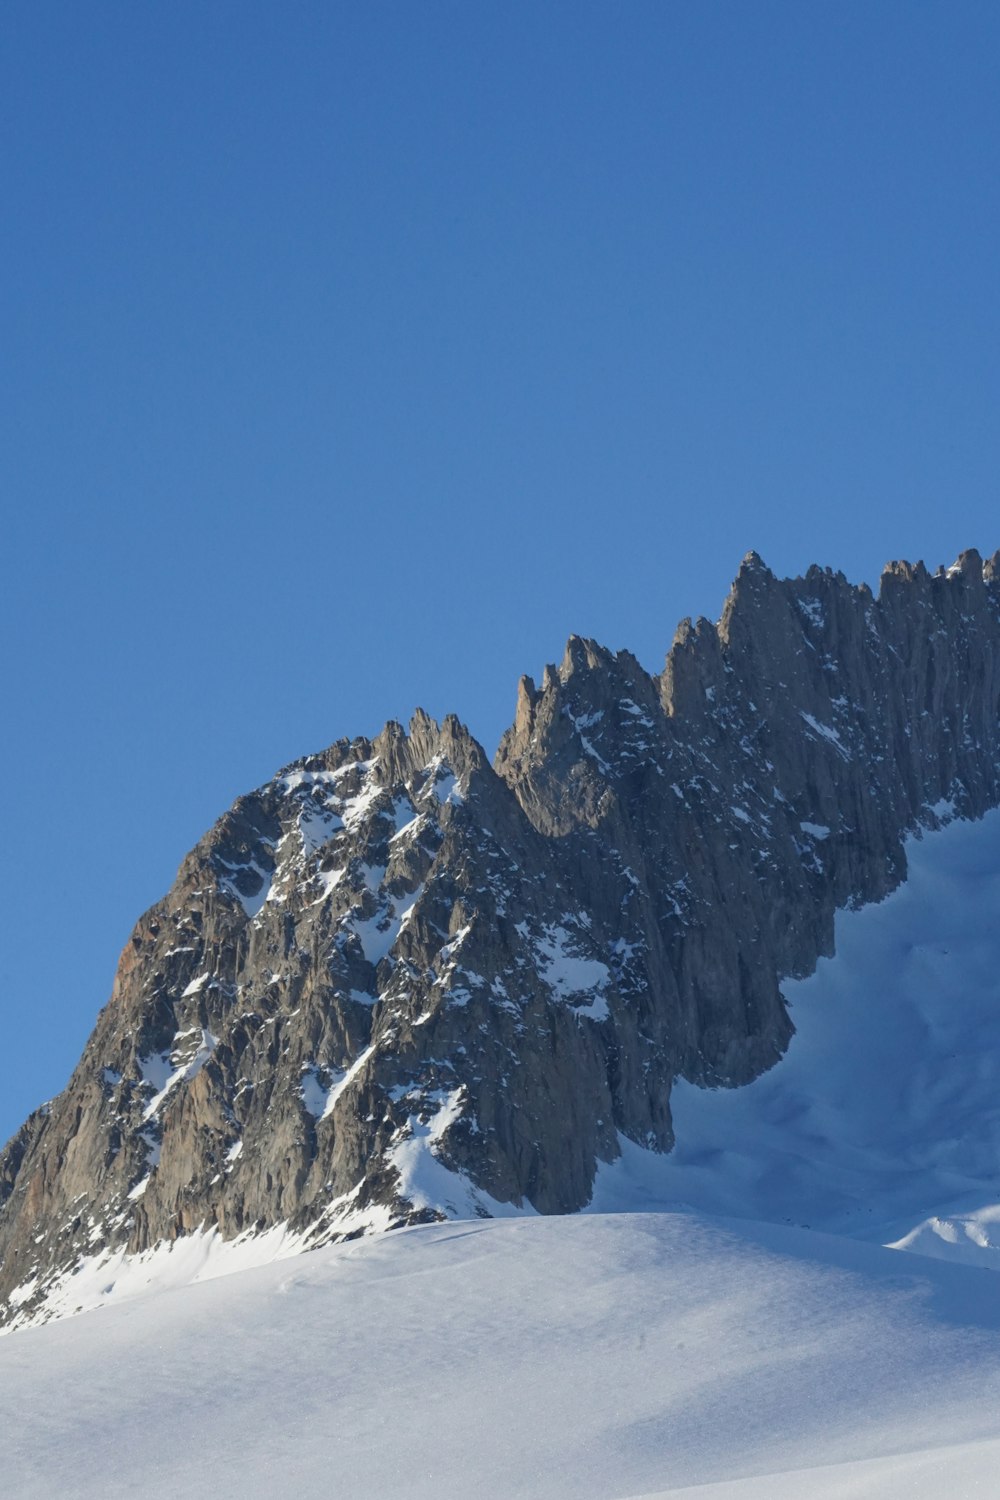 Una persona esquiando por una montaña cubierta de nieve